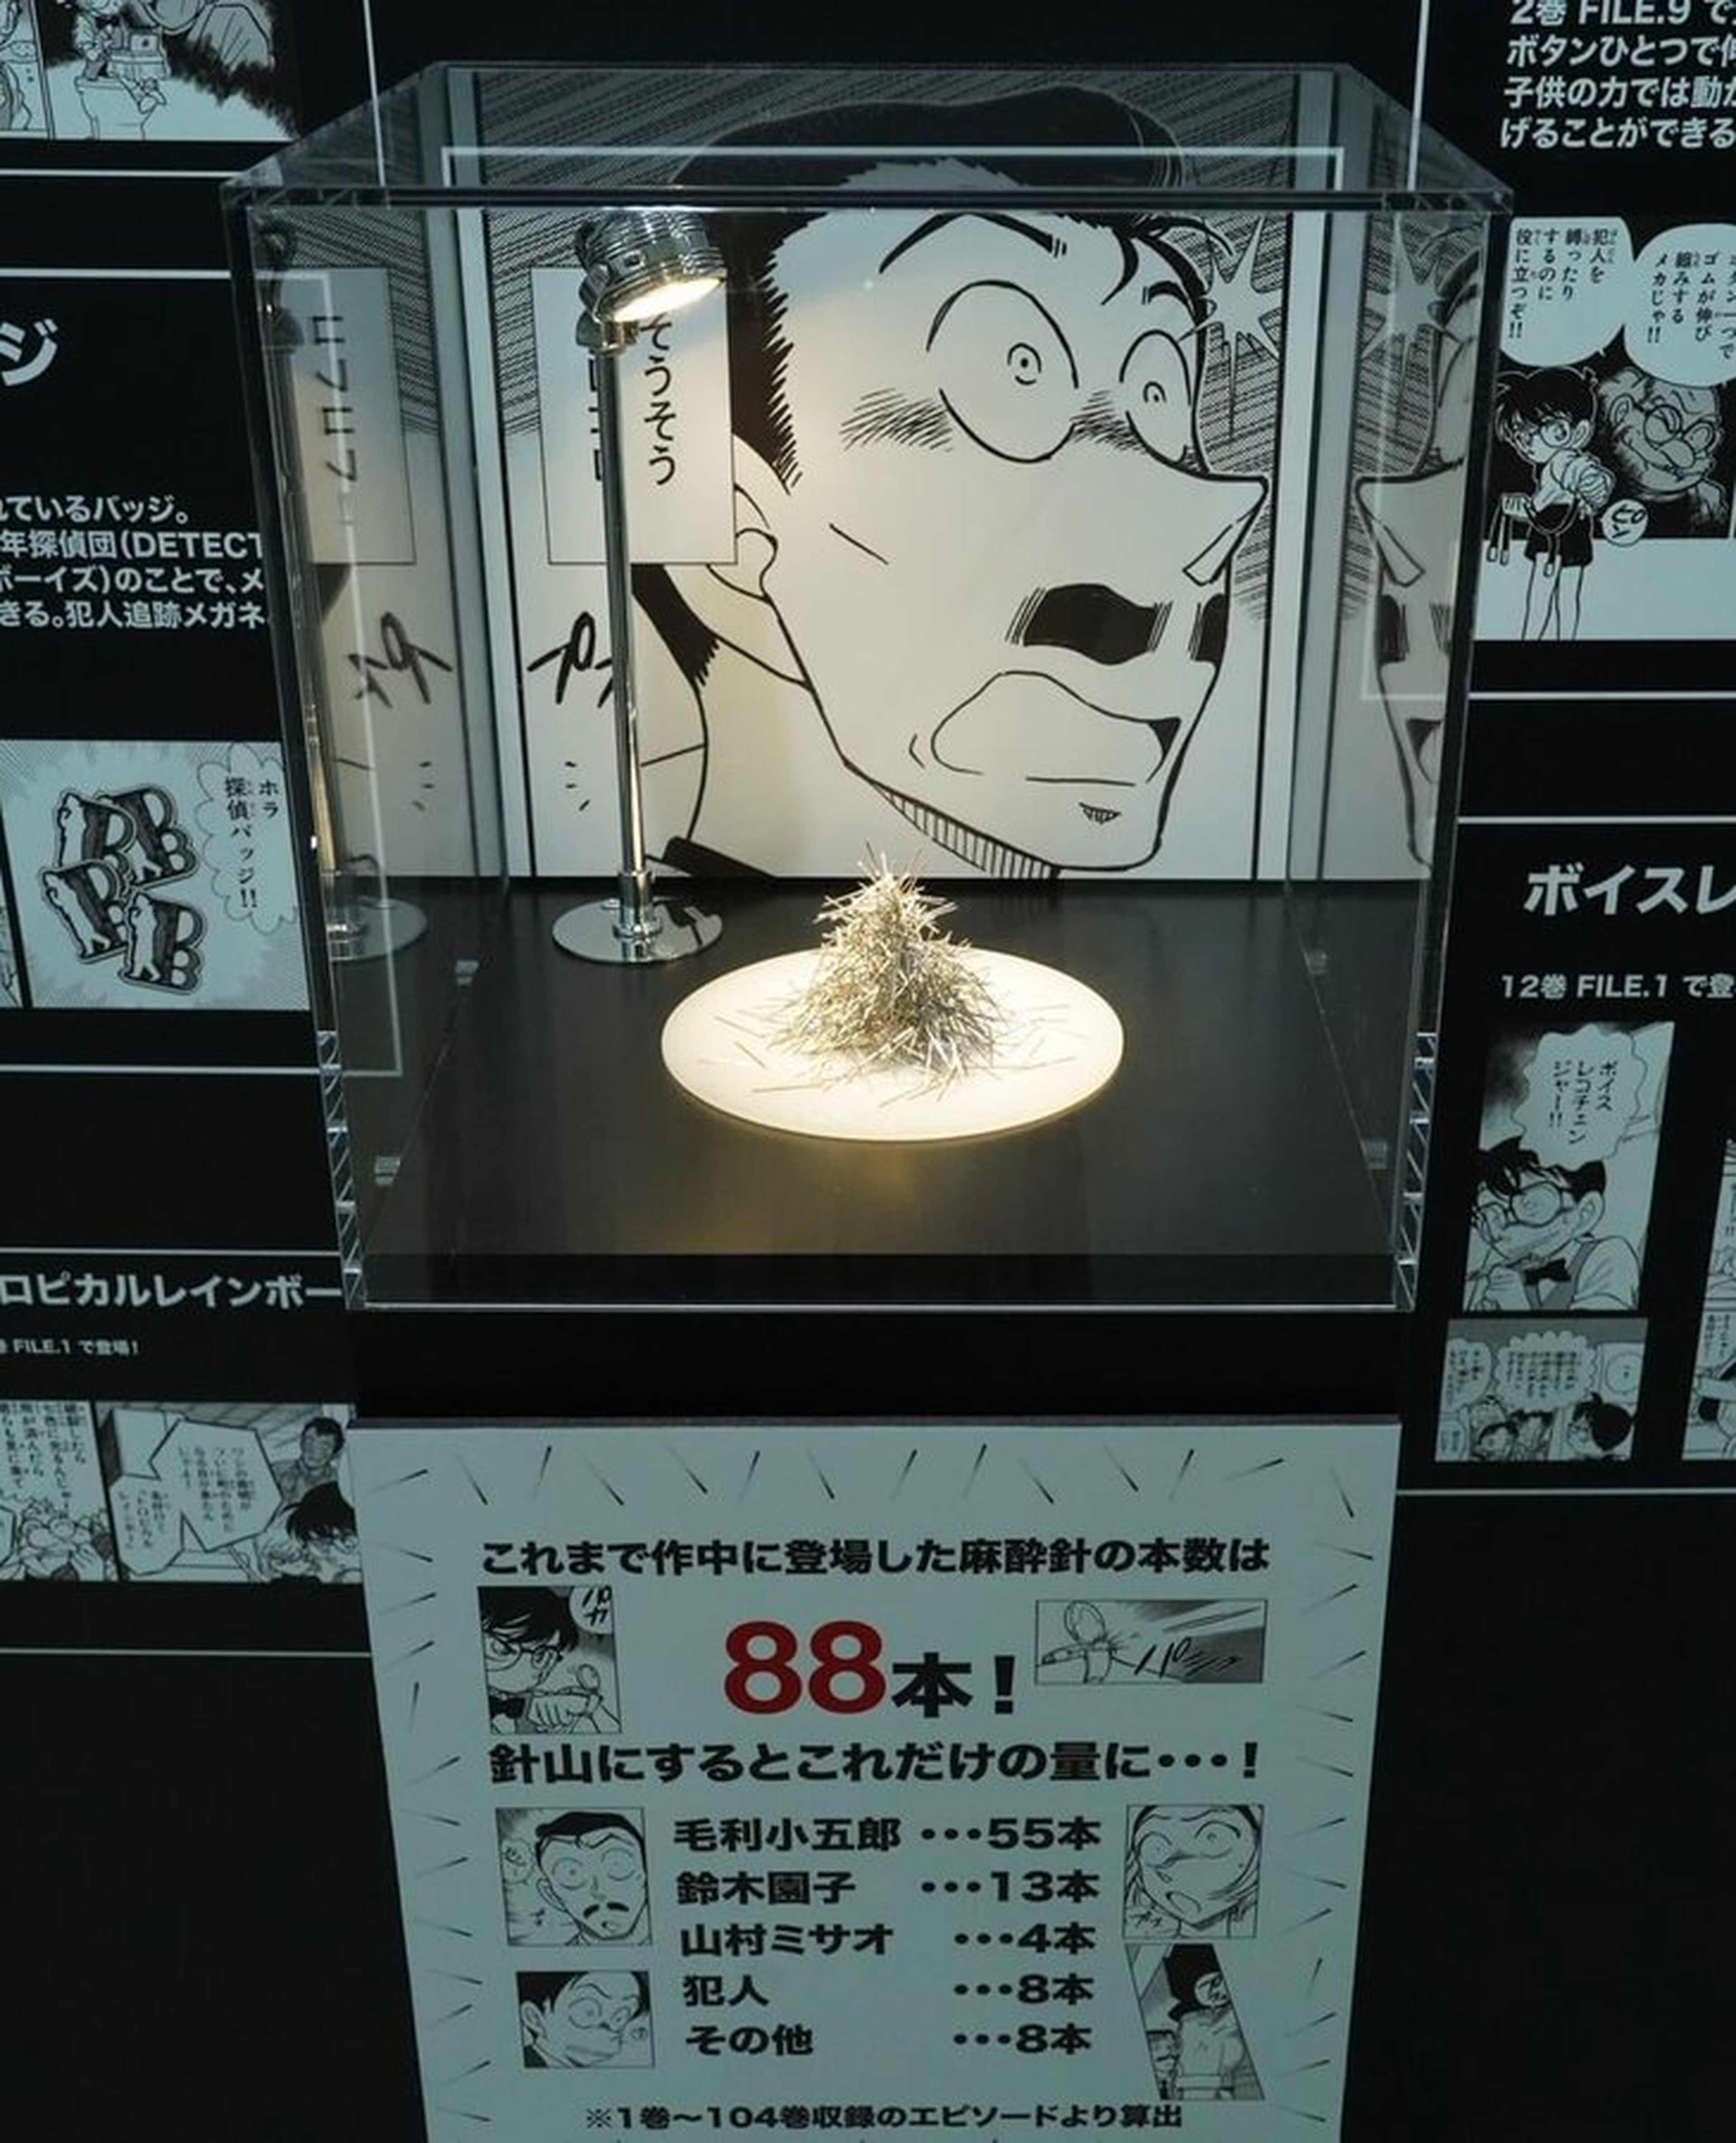 Exposición 30 aniversario de Detective Conan